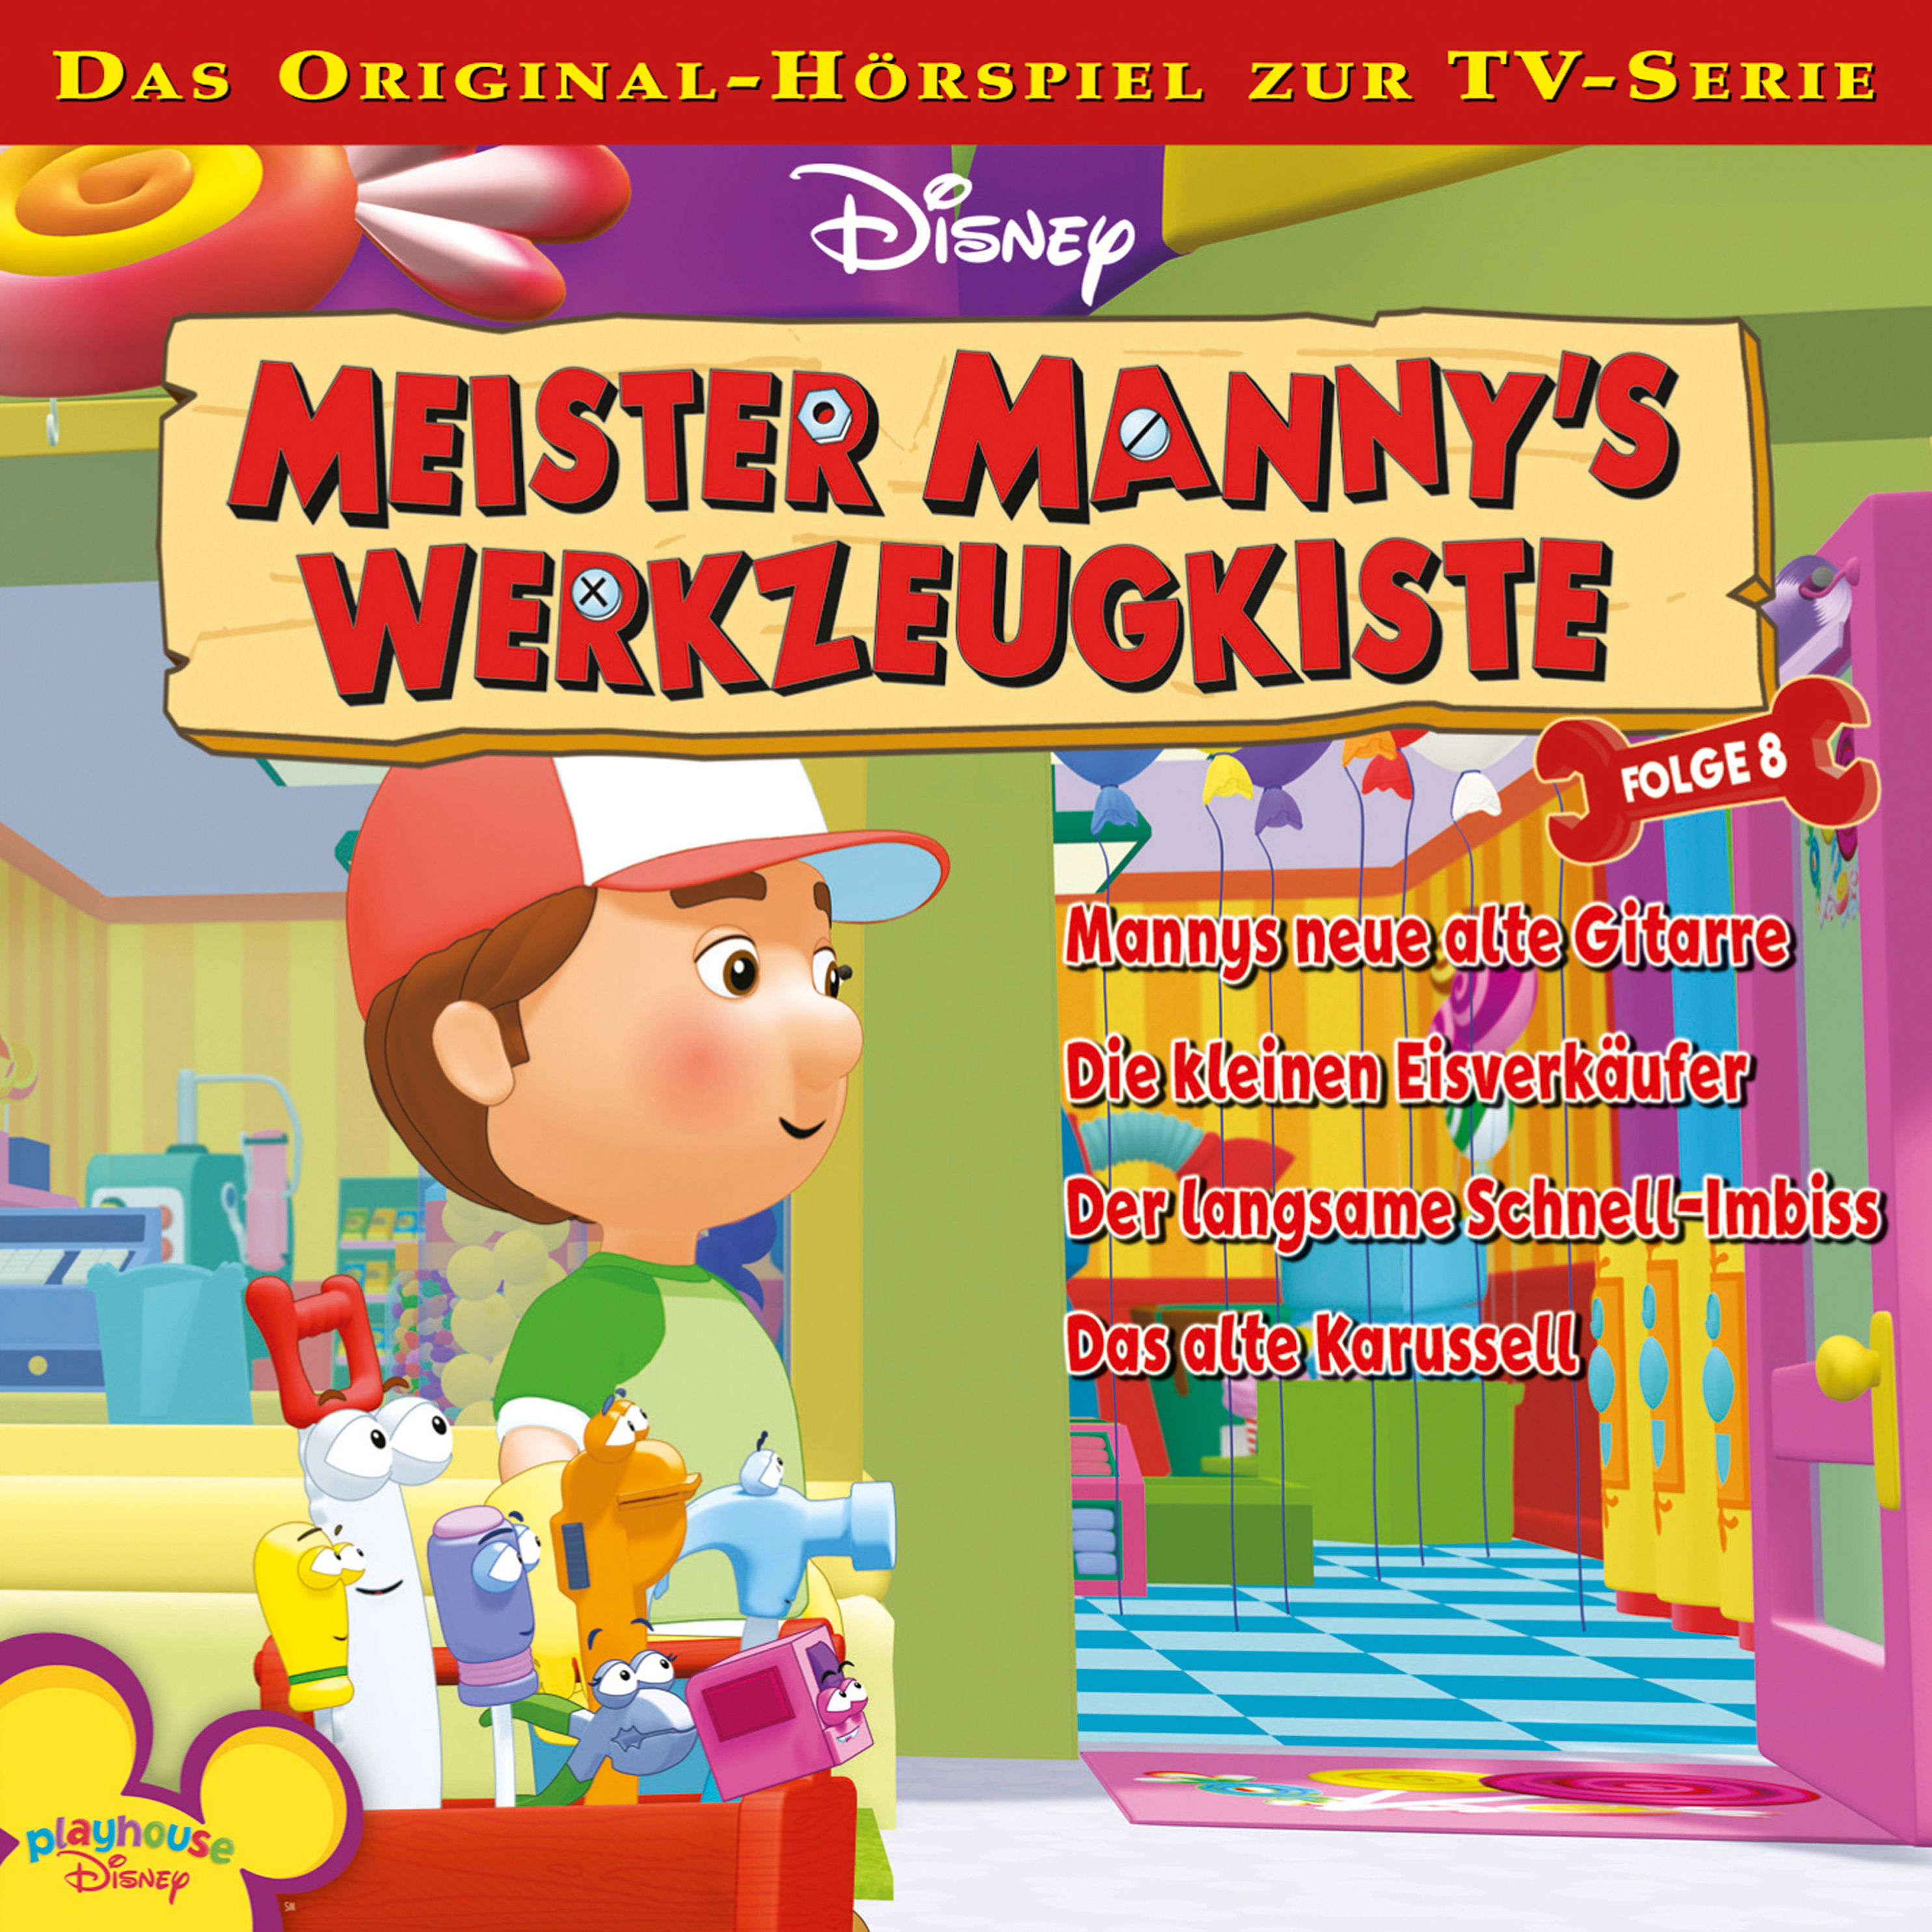 Disney Meister Manny's Werkzeugkiste - 8 - Disney Meister Manny's  Werkzeugkiste - Folge 8 Hörbuch Download